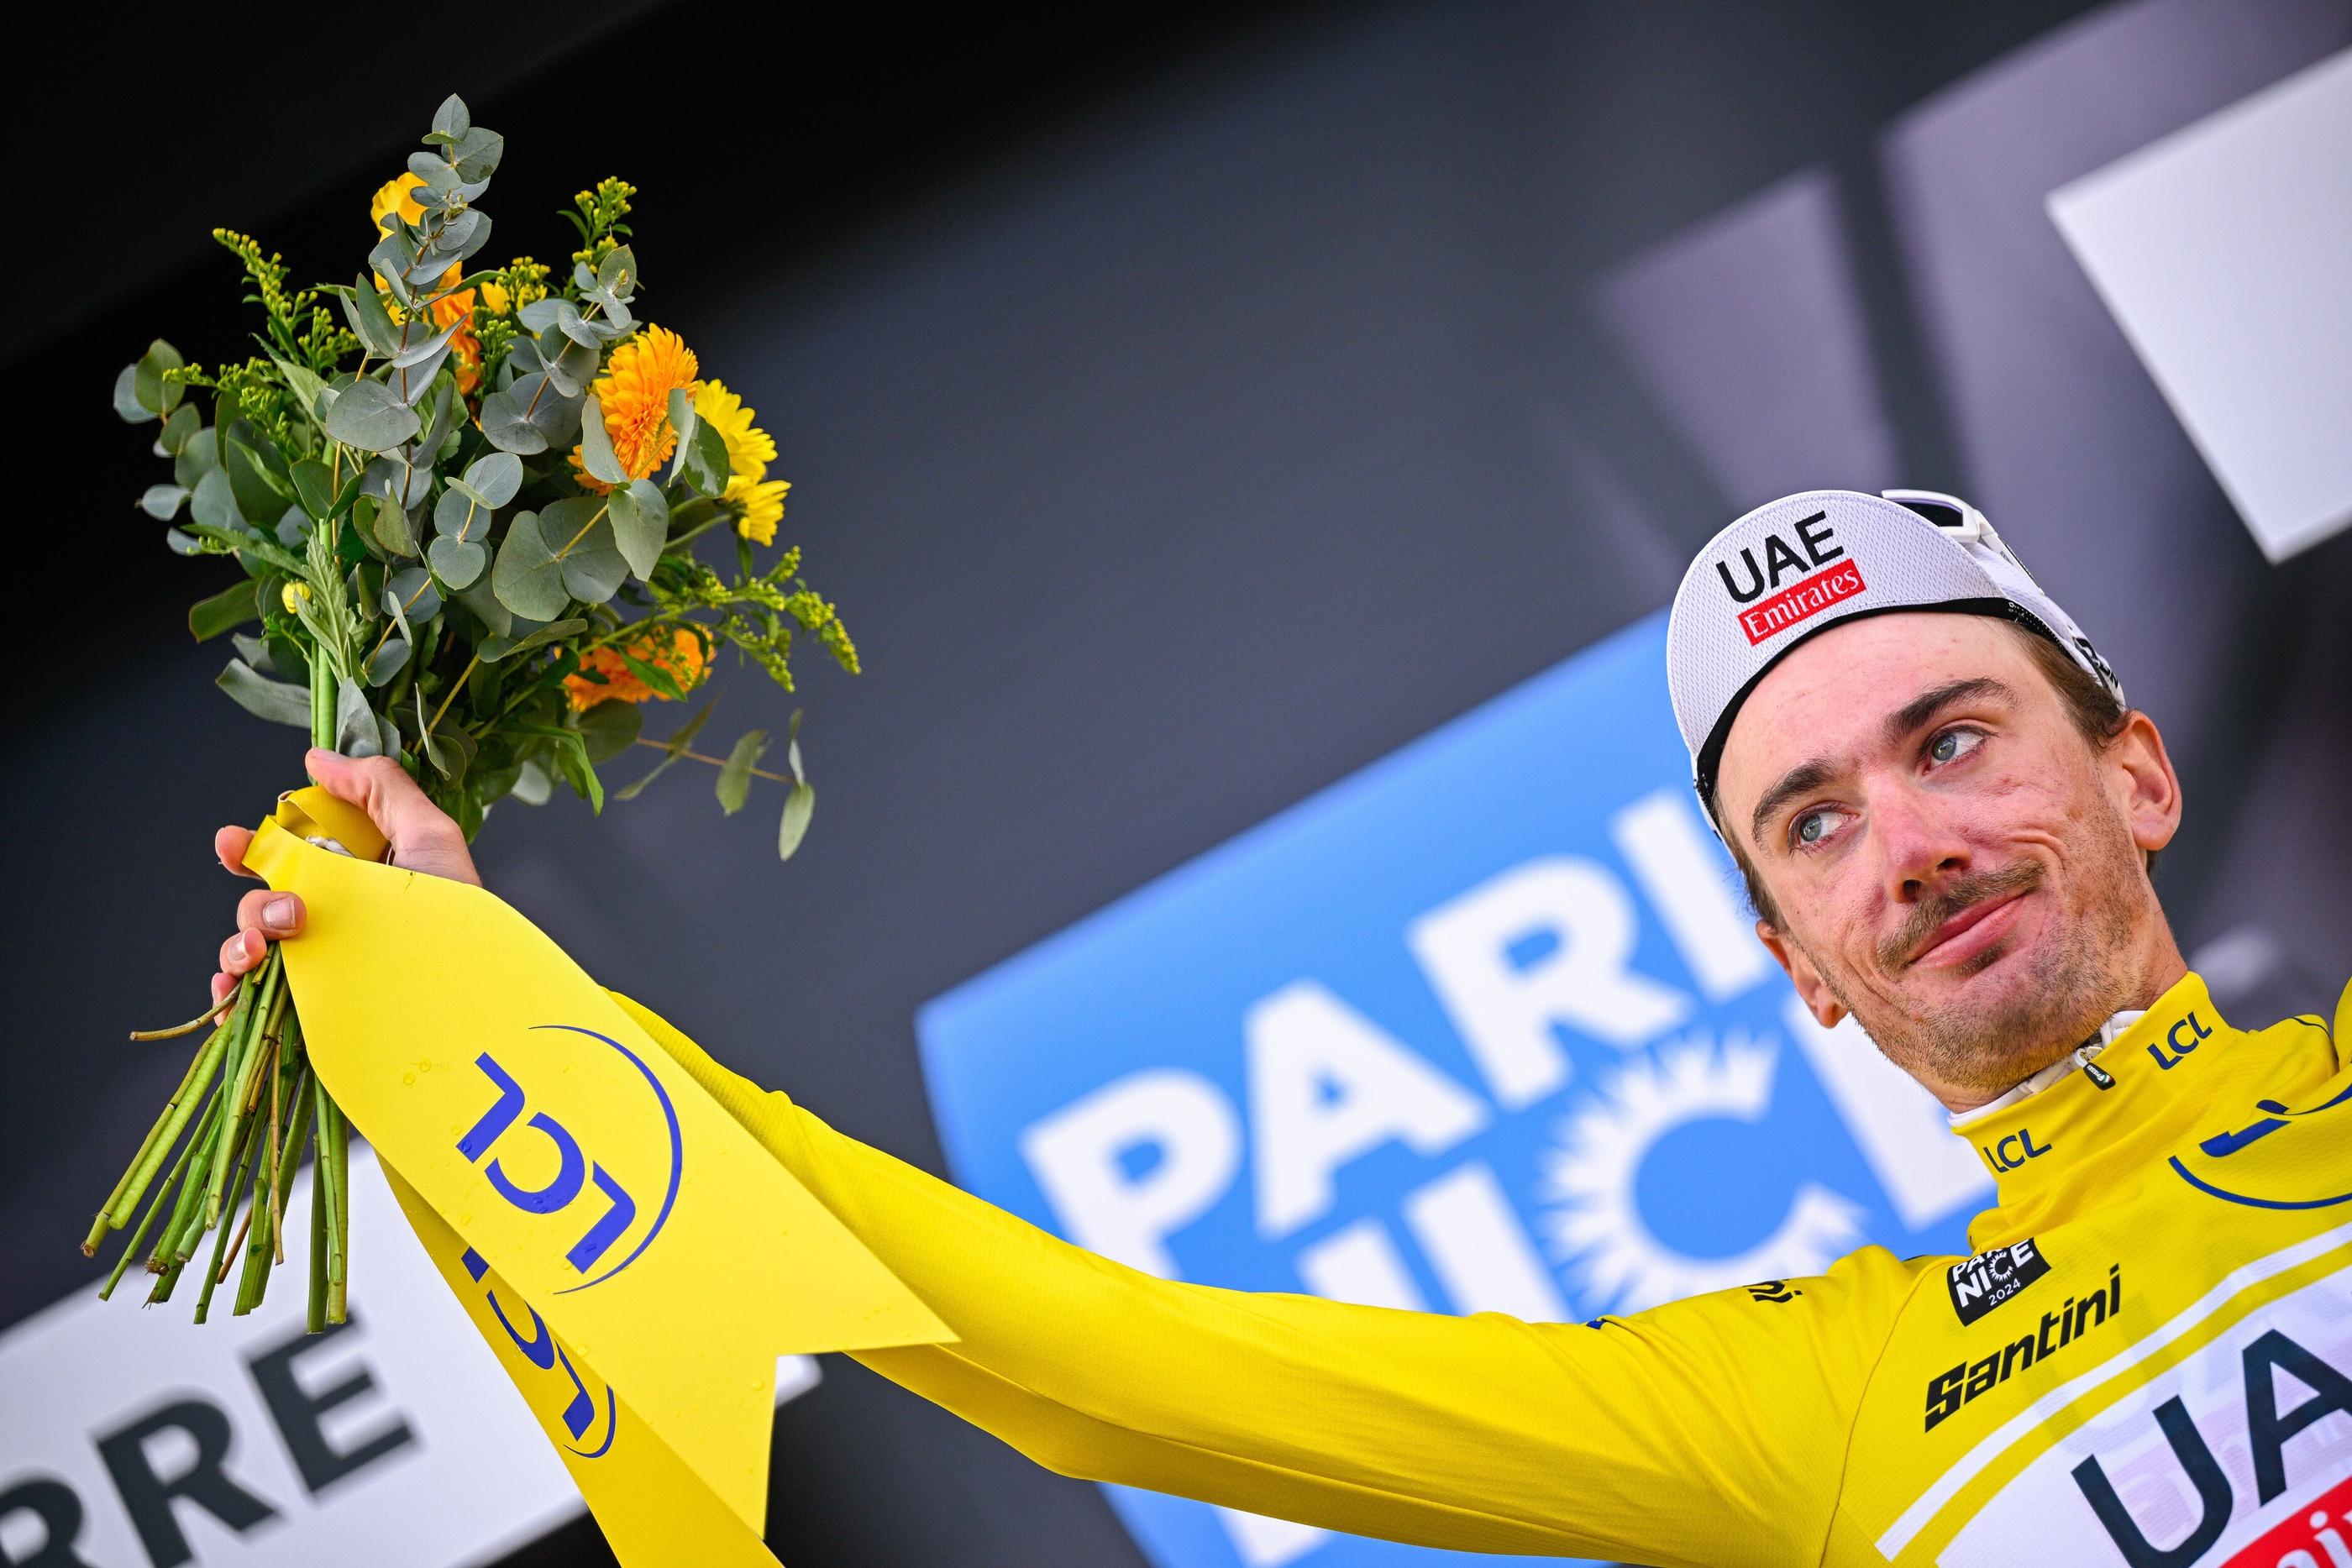 Brandon McNulty, champion des Etats-Unis du contre-la-montre, a pris le maillot jaune de Paris-Nice après la 3e étape ce mardi 5 mars. Icon sport